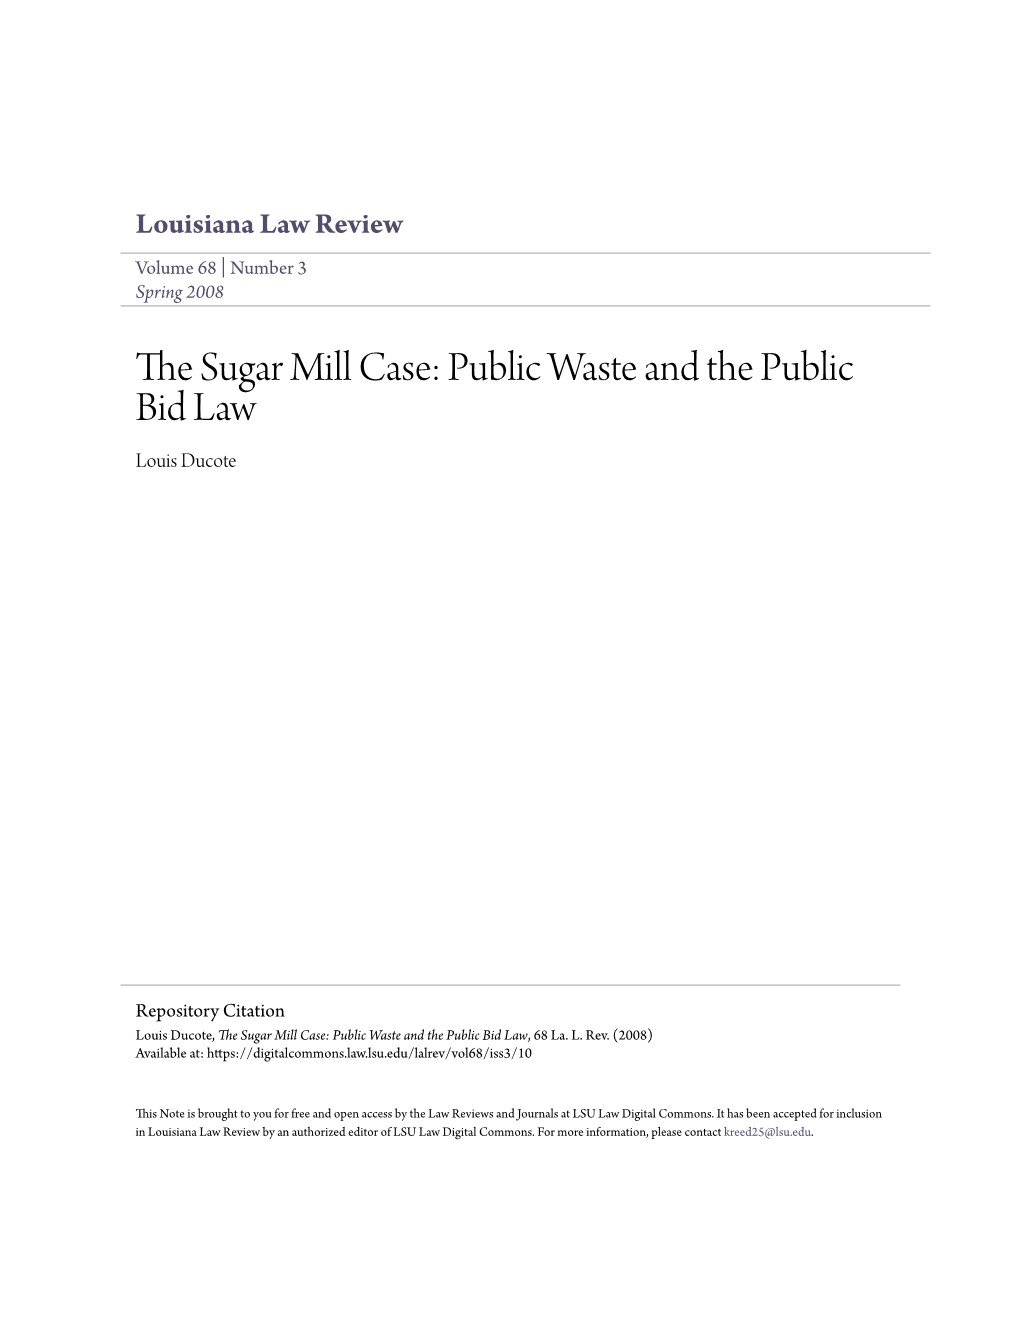 The Sugar Mill Case: Public Waste and the Public Bid Law, 68 La